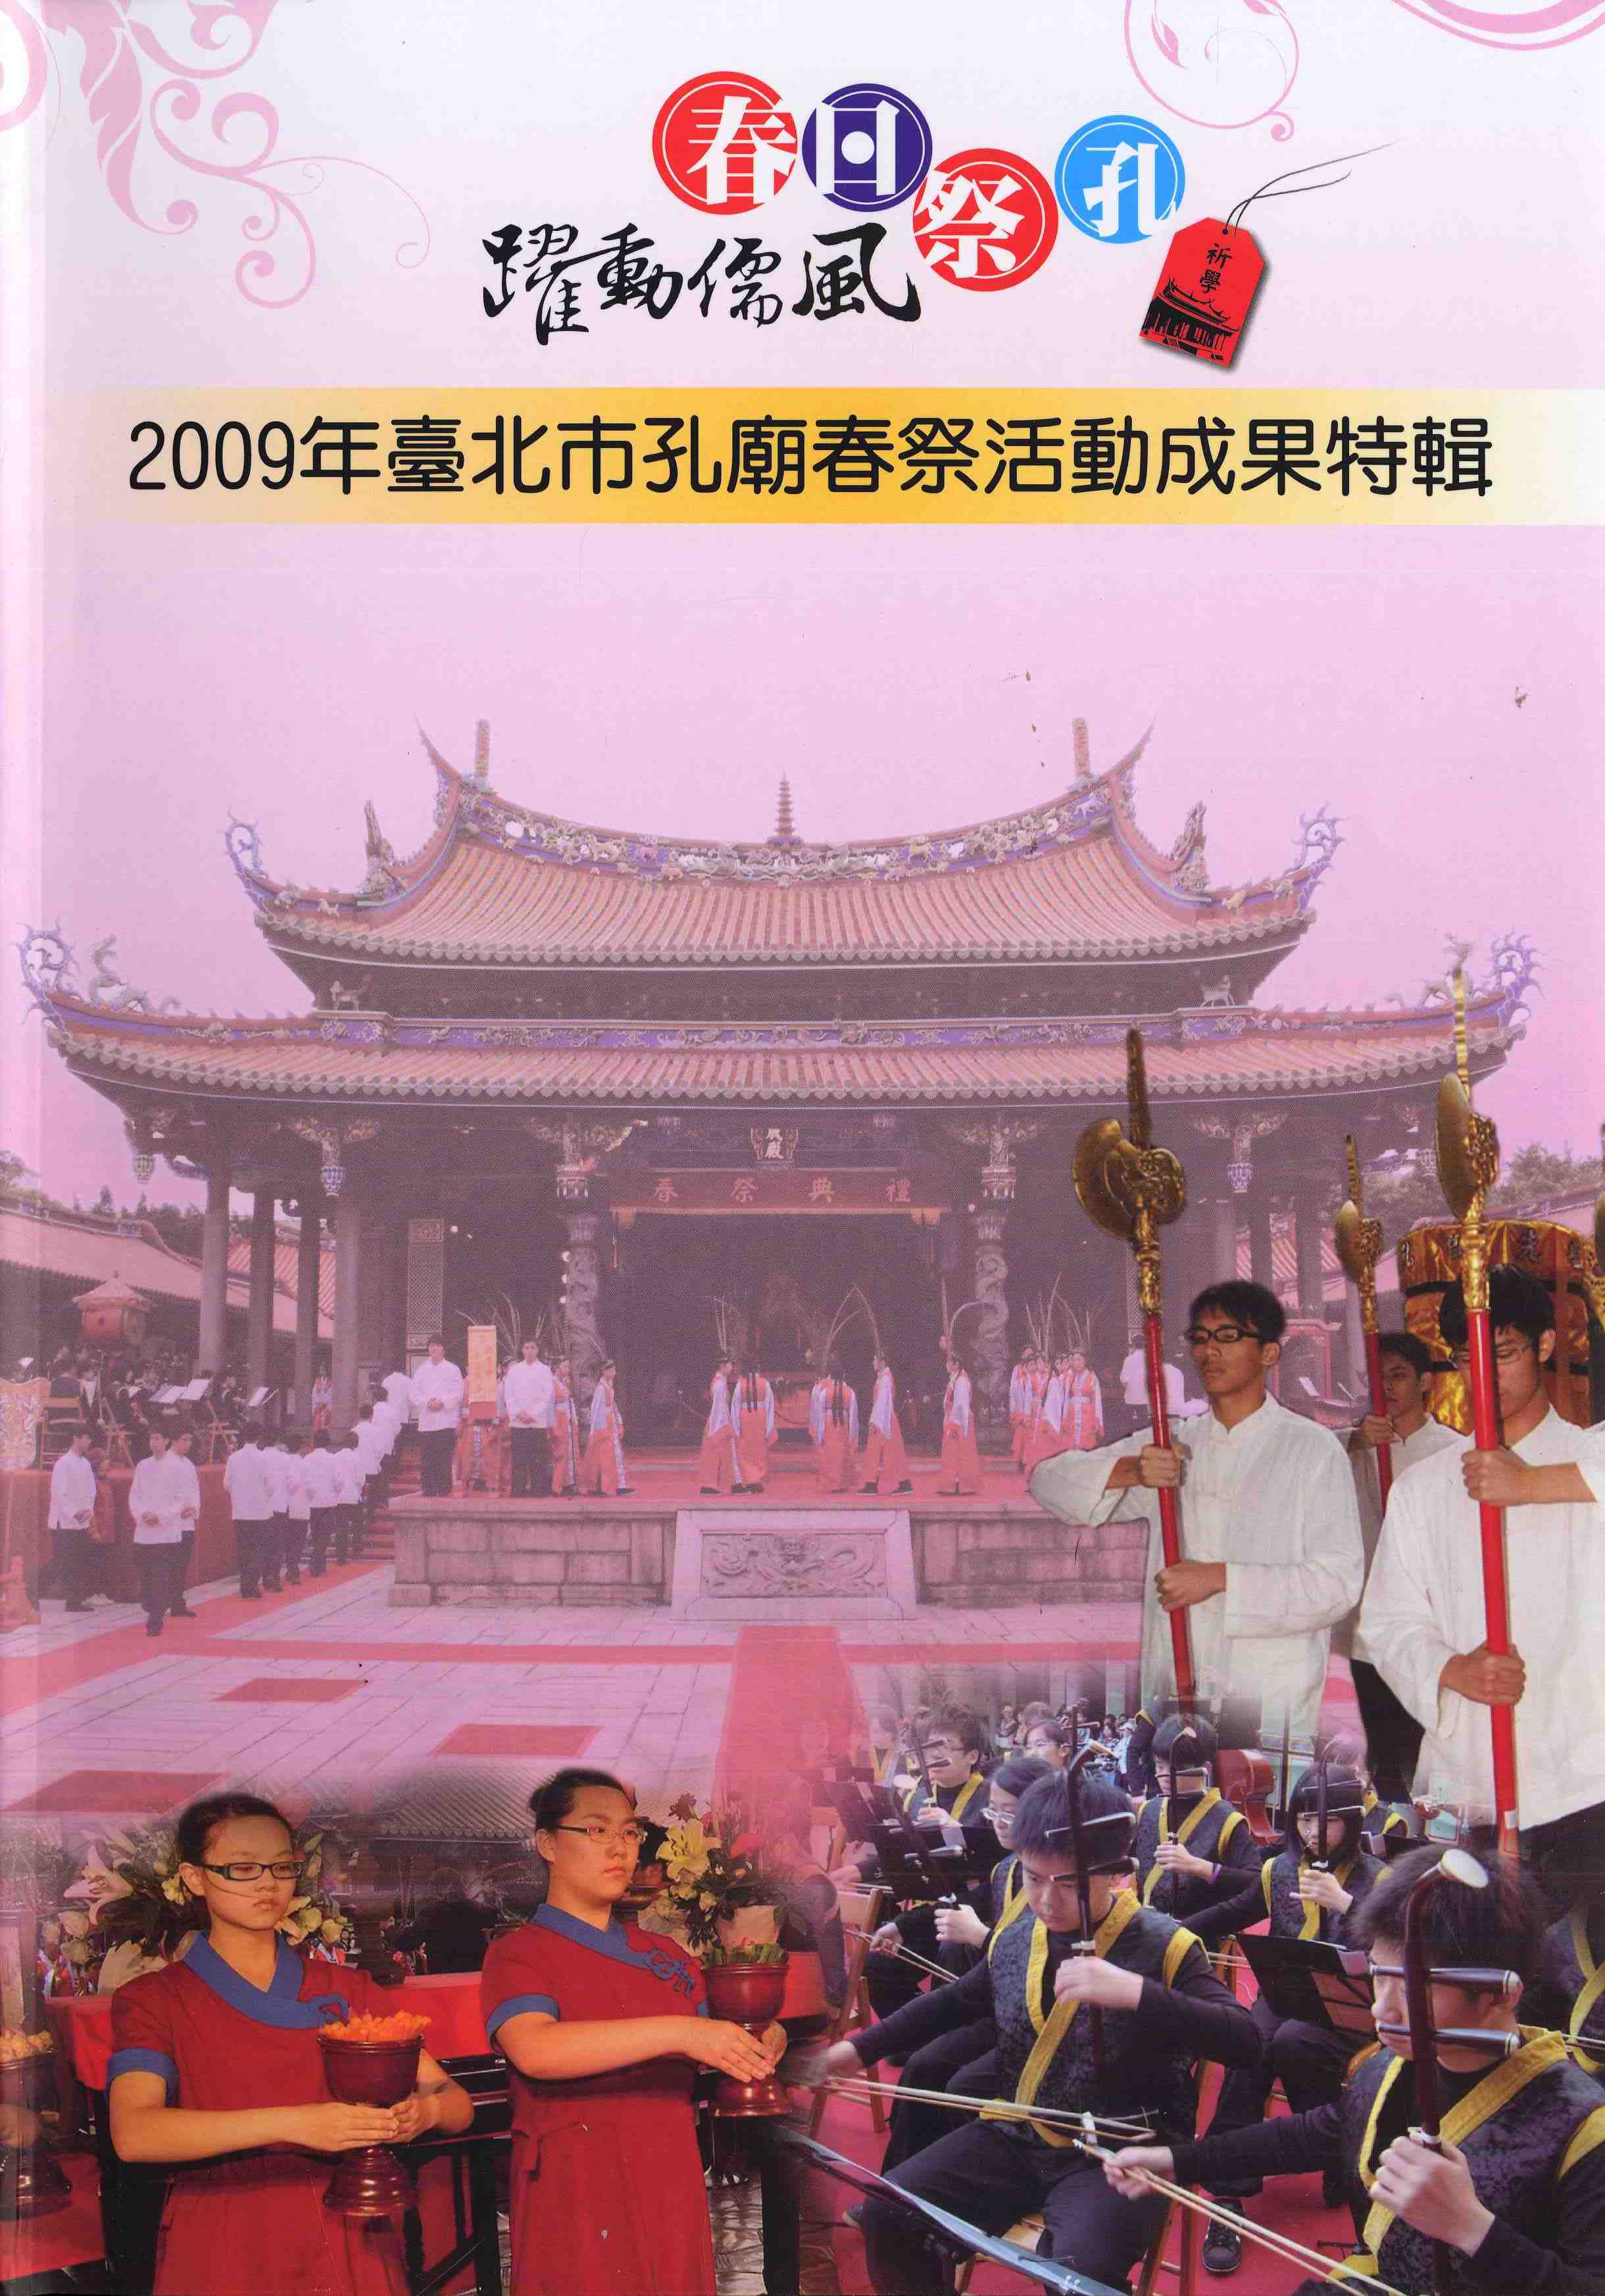 2009年臺北市孔廟春祭活動成果特刊